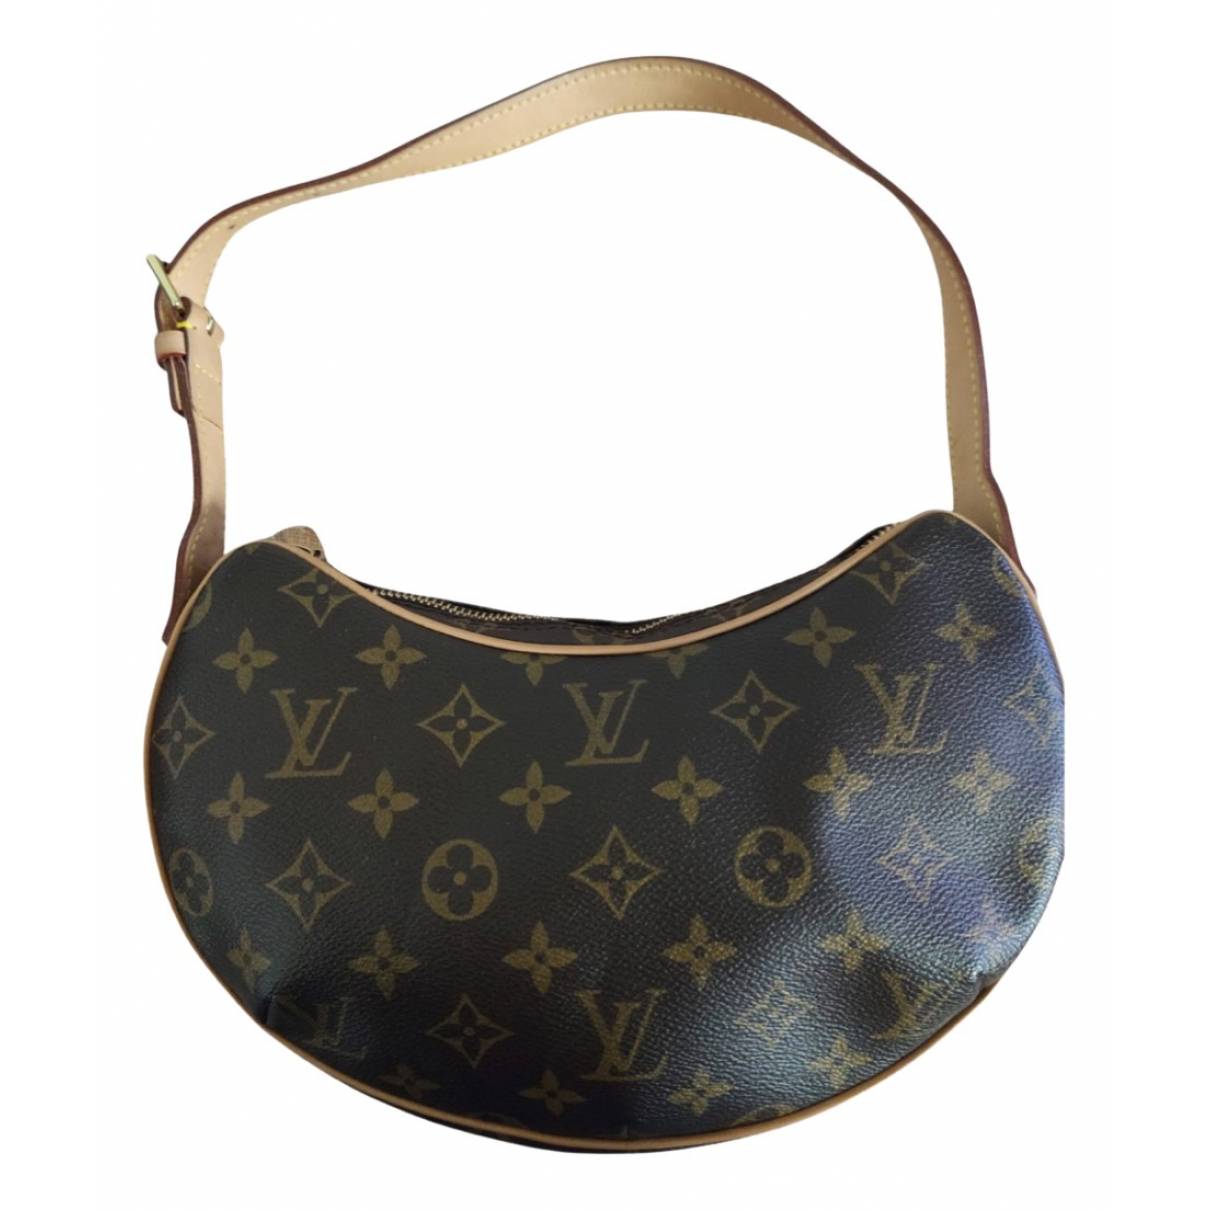 Croissant cloth handbag Louis Vuitton Brown in Cloth - 19720867